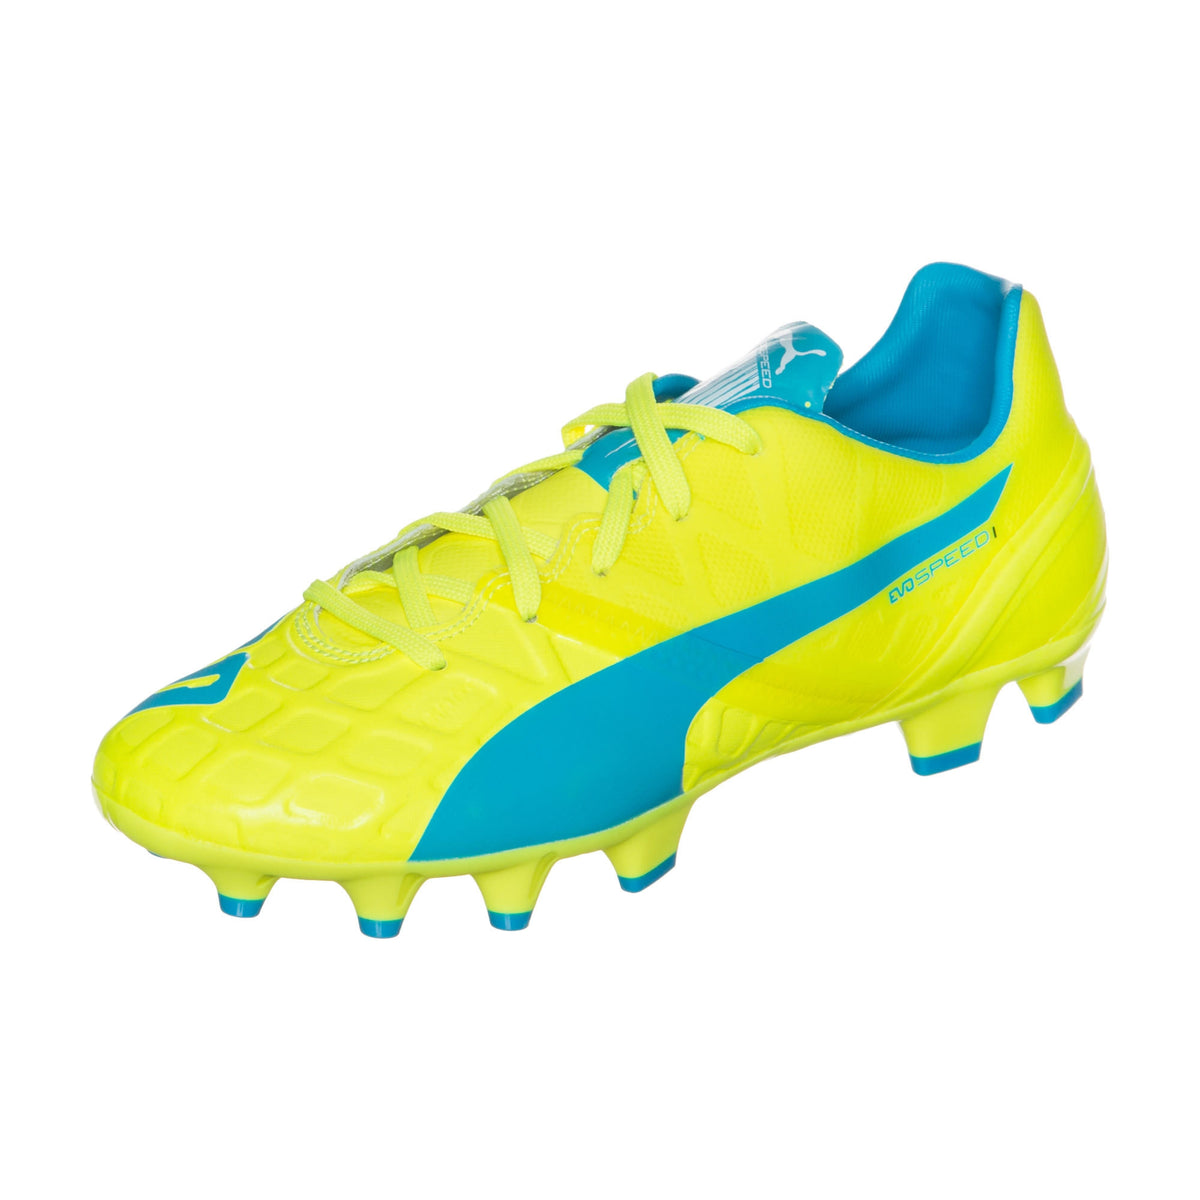 Puma evoSPEED 1.4 FG Junior chaussure de soccer enfant jaune bleu